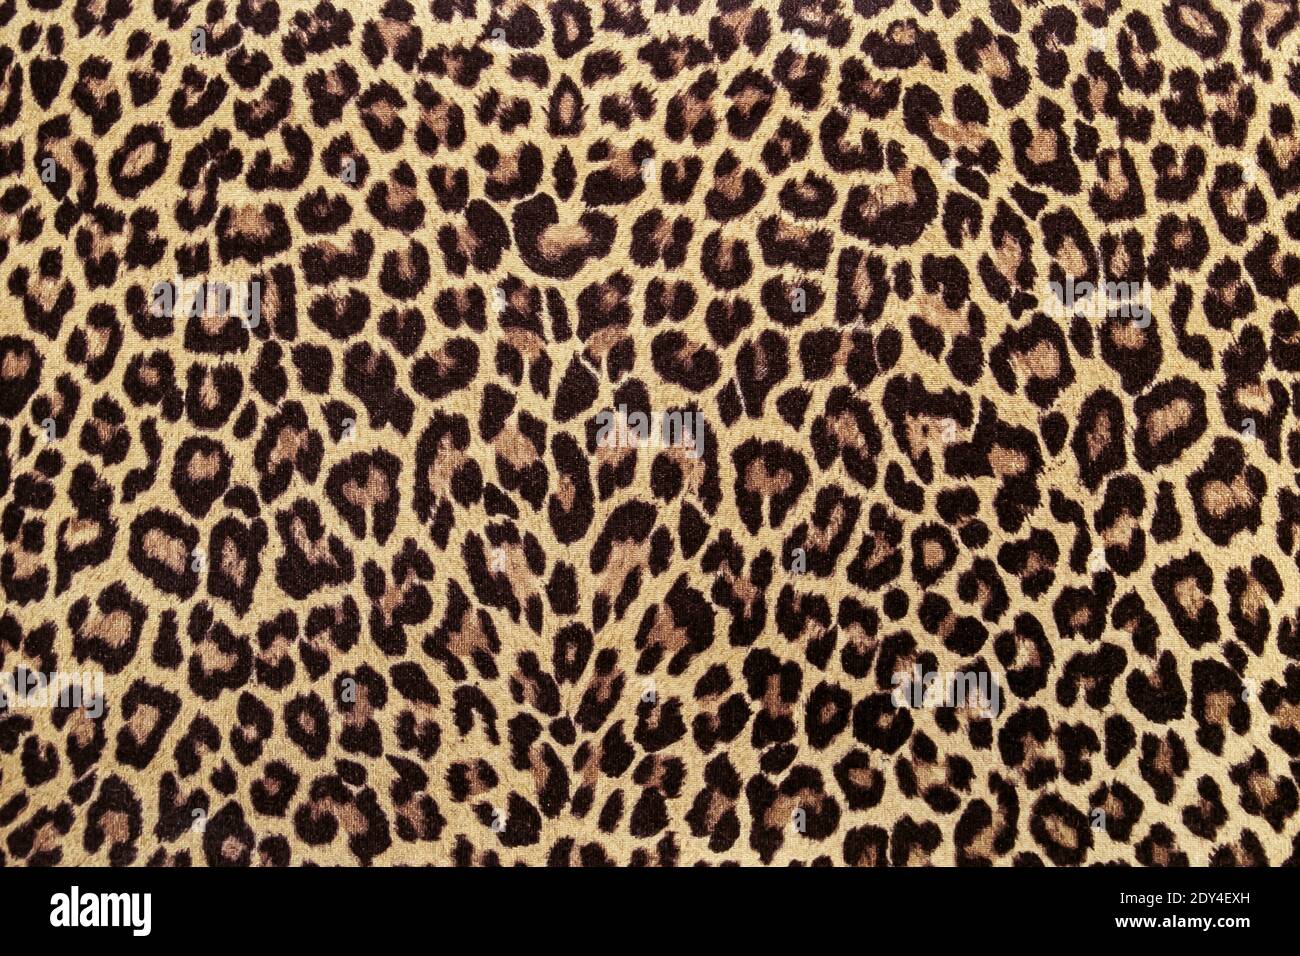 Leopardeneffekt. Textildesign mit Leopardenmuster und Tiermuster. Nahtloses Muster aus Gepardenhaut. Leopardeneffekt, Stoffmuster, Hintergrundmuster Stockfoto